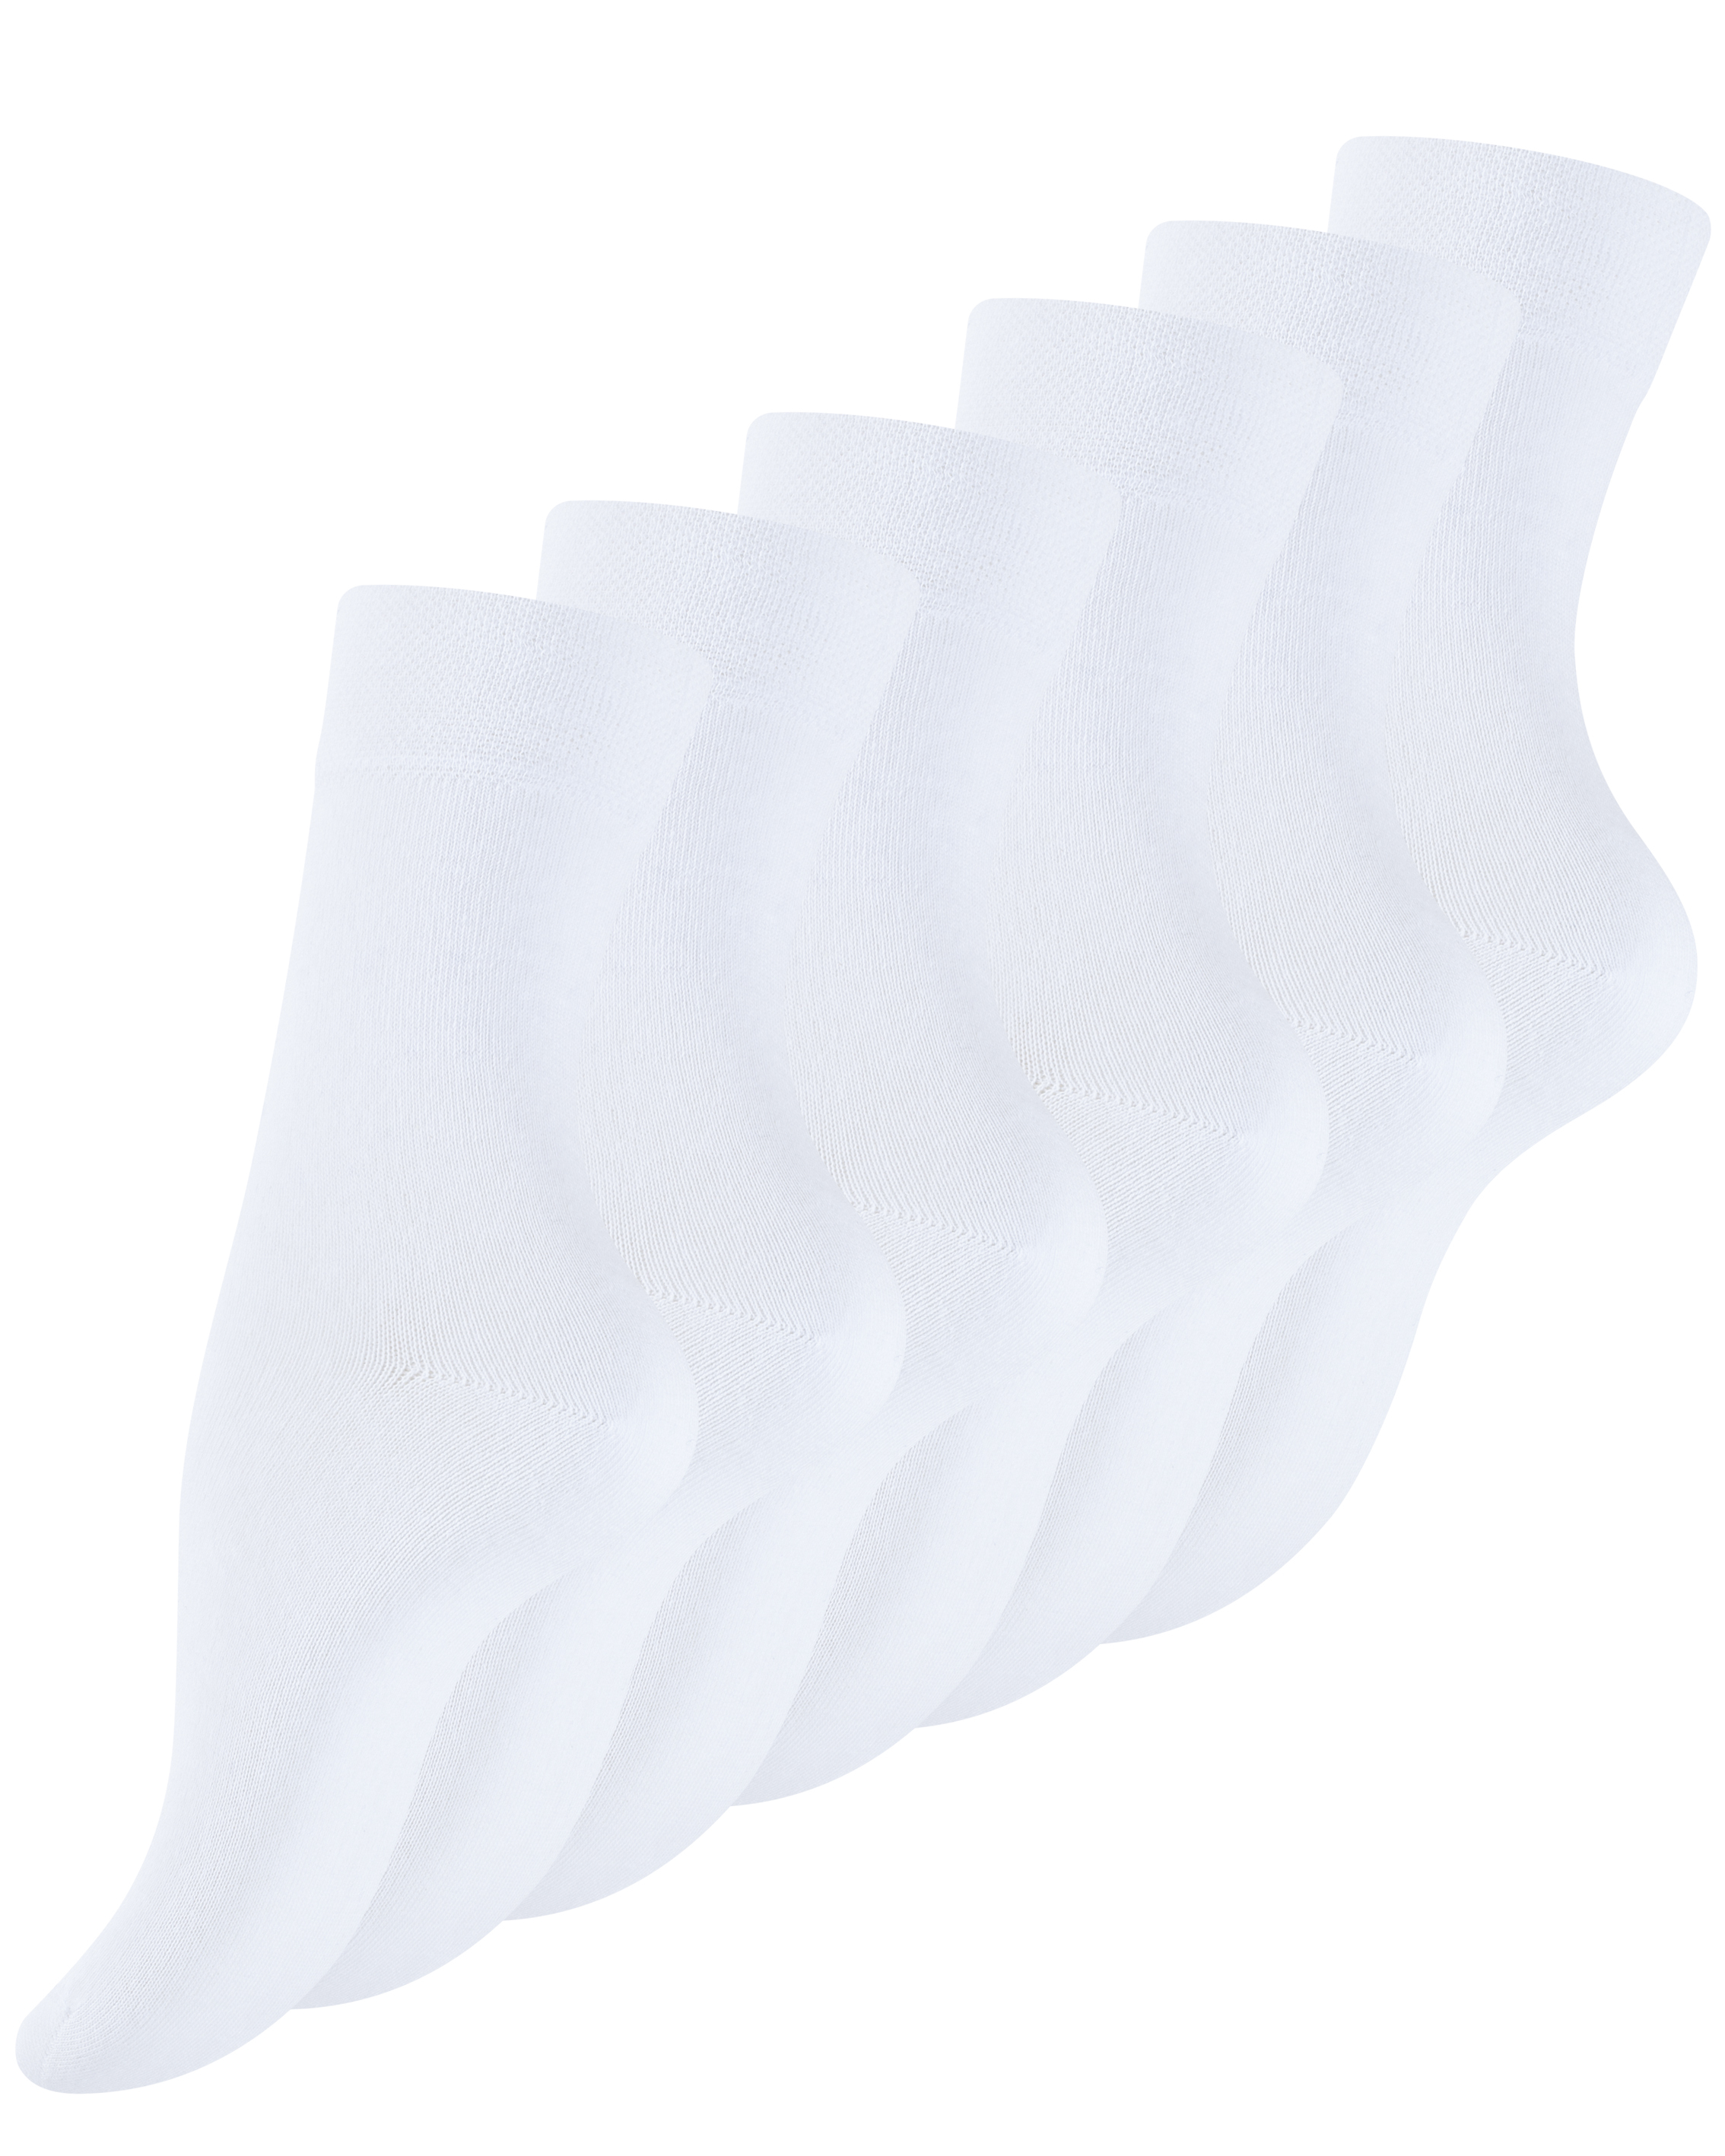 Носки Cotton Prime Gesundheits 6 шт, ohne Gummibund, белый